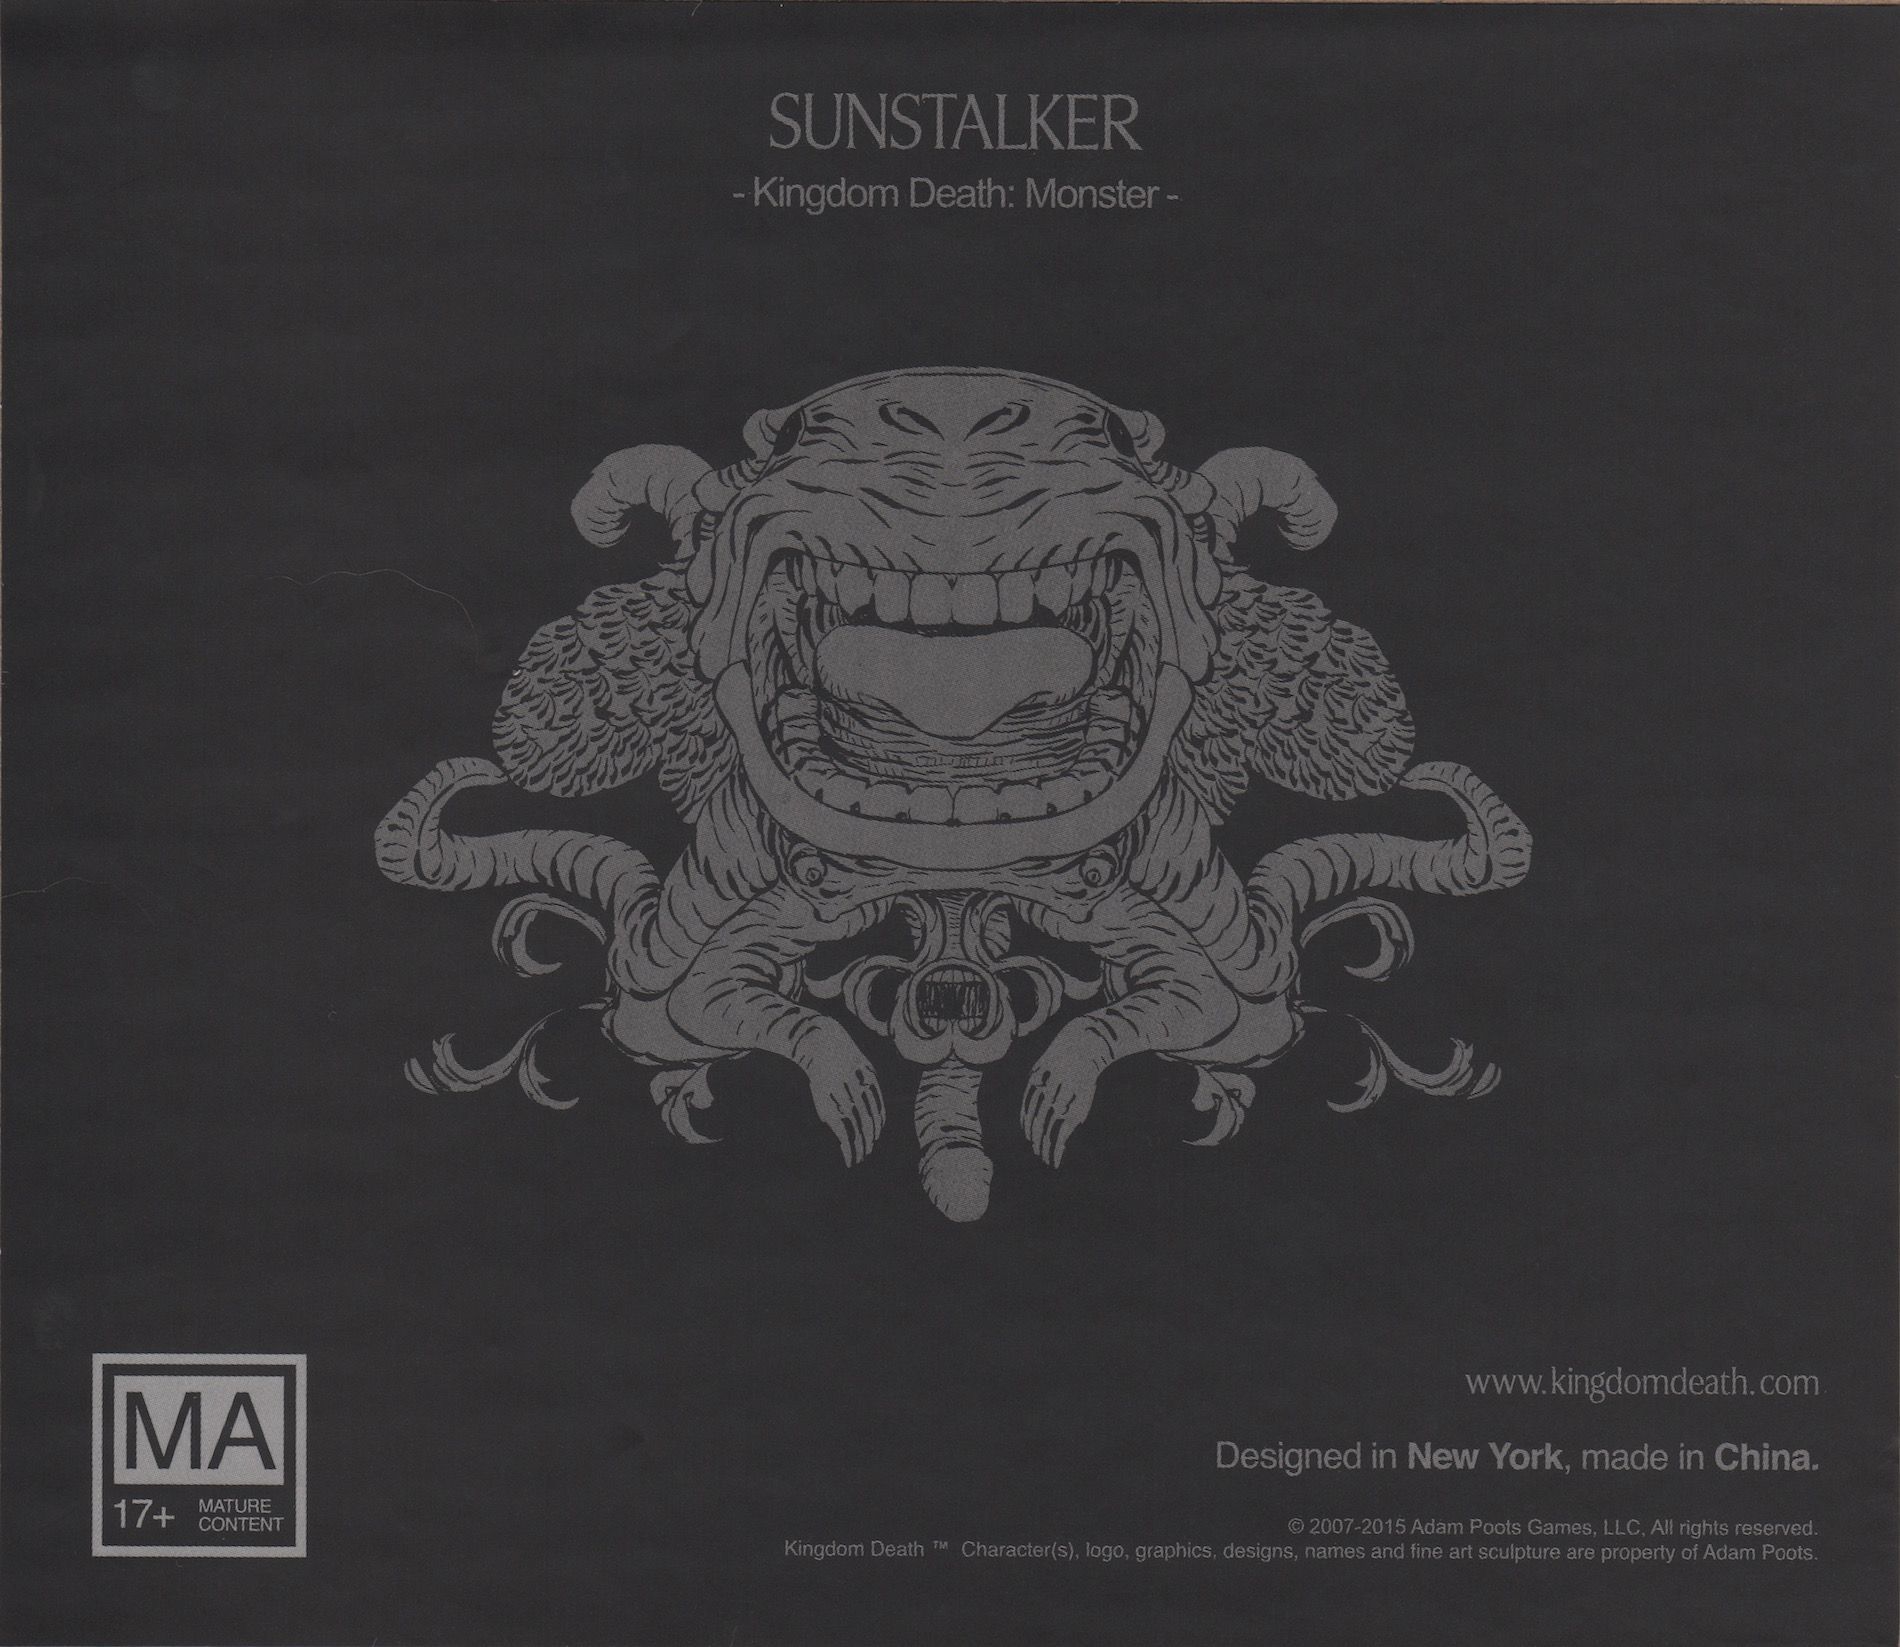 Kingdom Death: Monster – Sunstalker Expansion